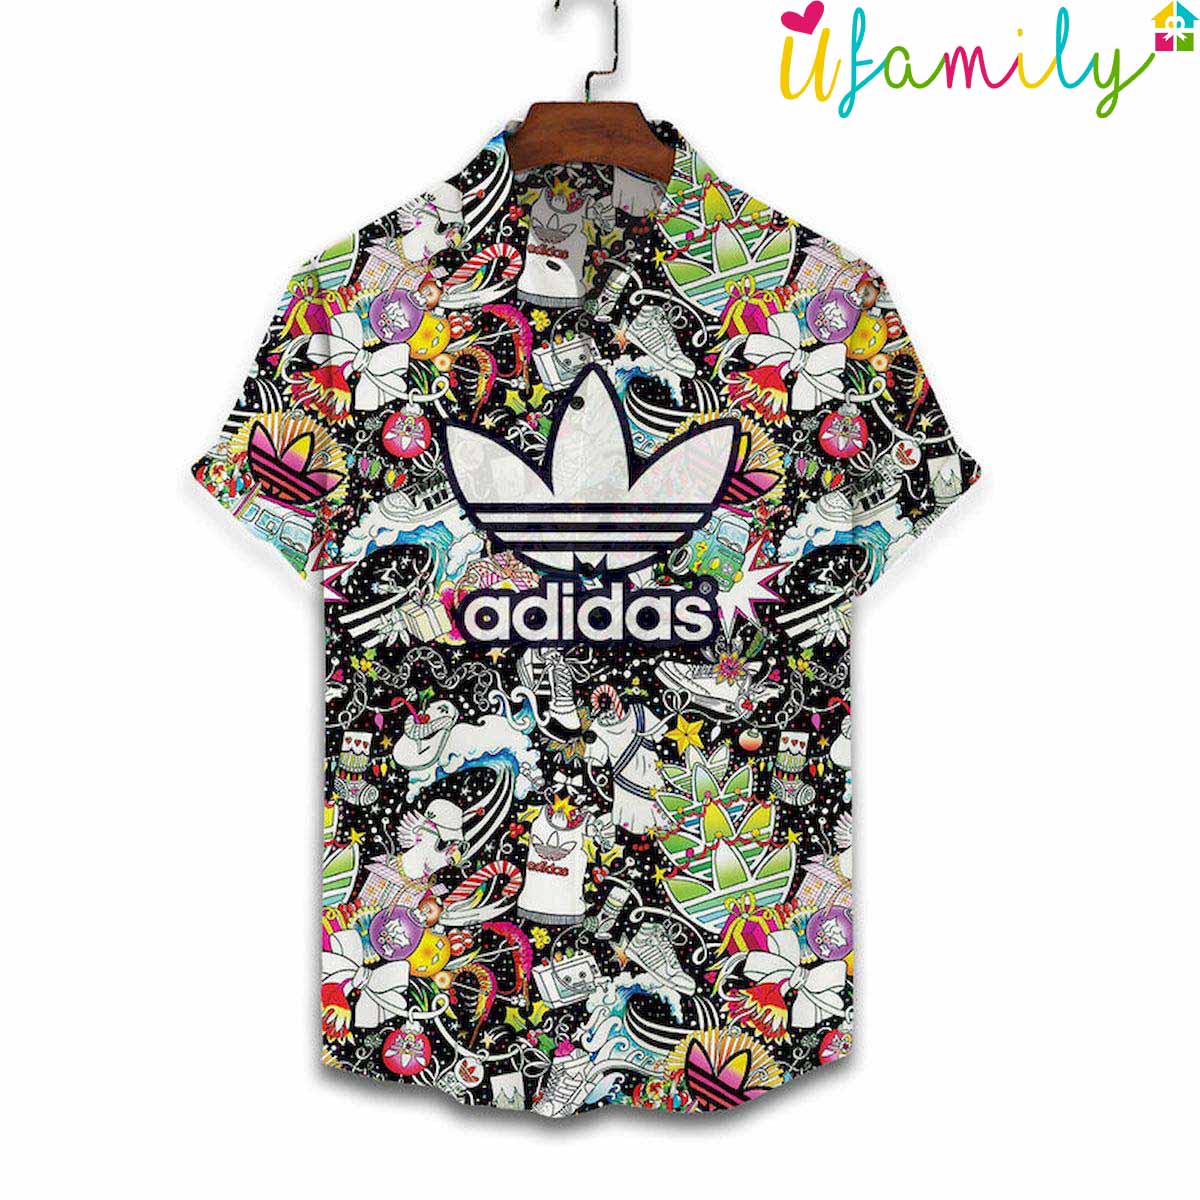 Adidas Hawaiian shirt